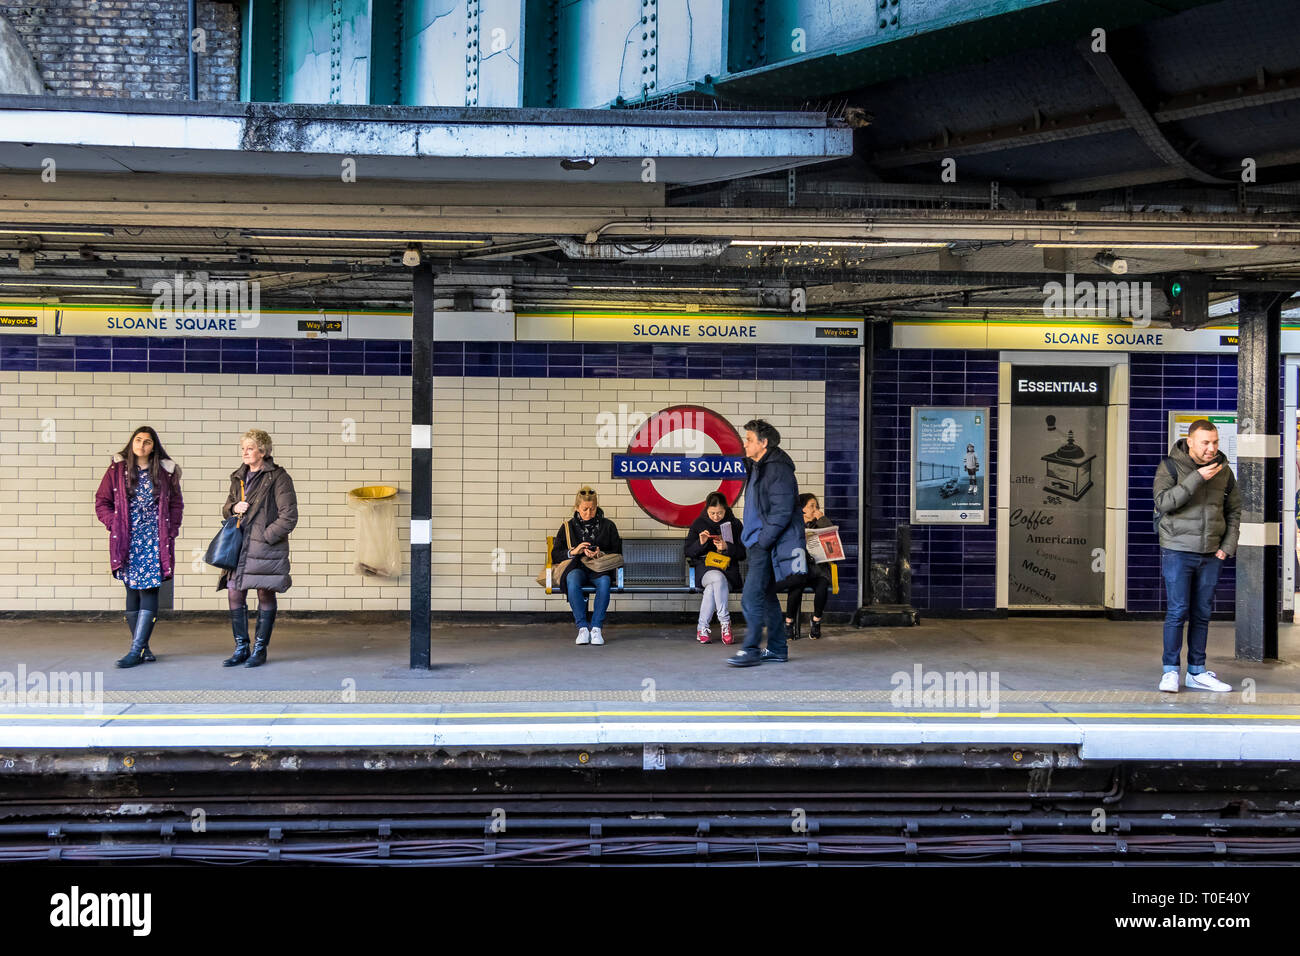 Personnes sur la plate-forme hte attendant un train souterrain à la station de métro Sloane Square, Londres, Royaume-Uni Banque D'Images